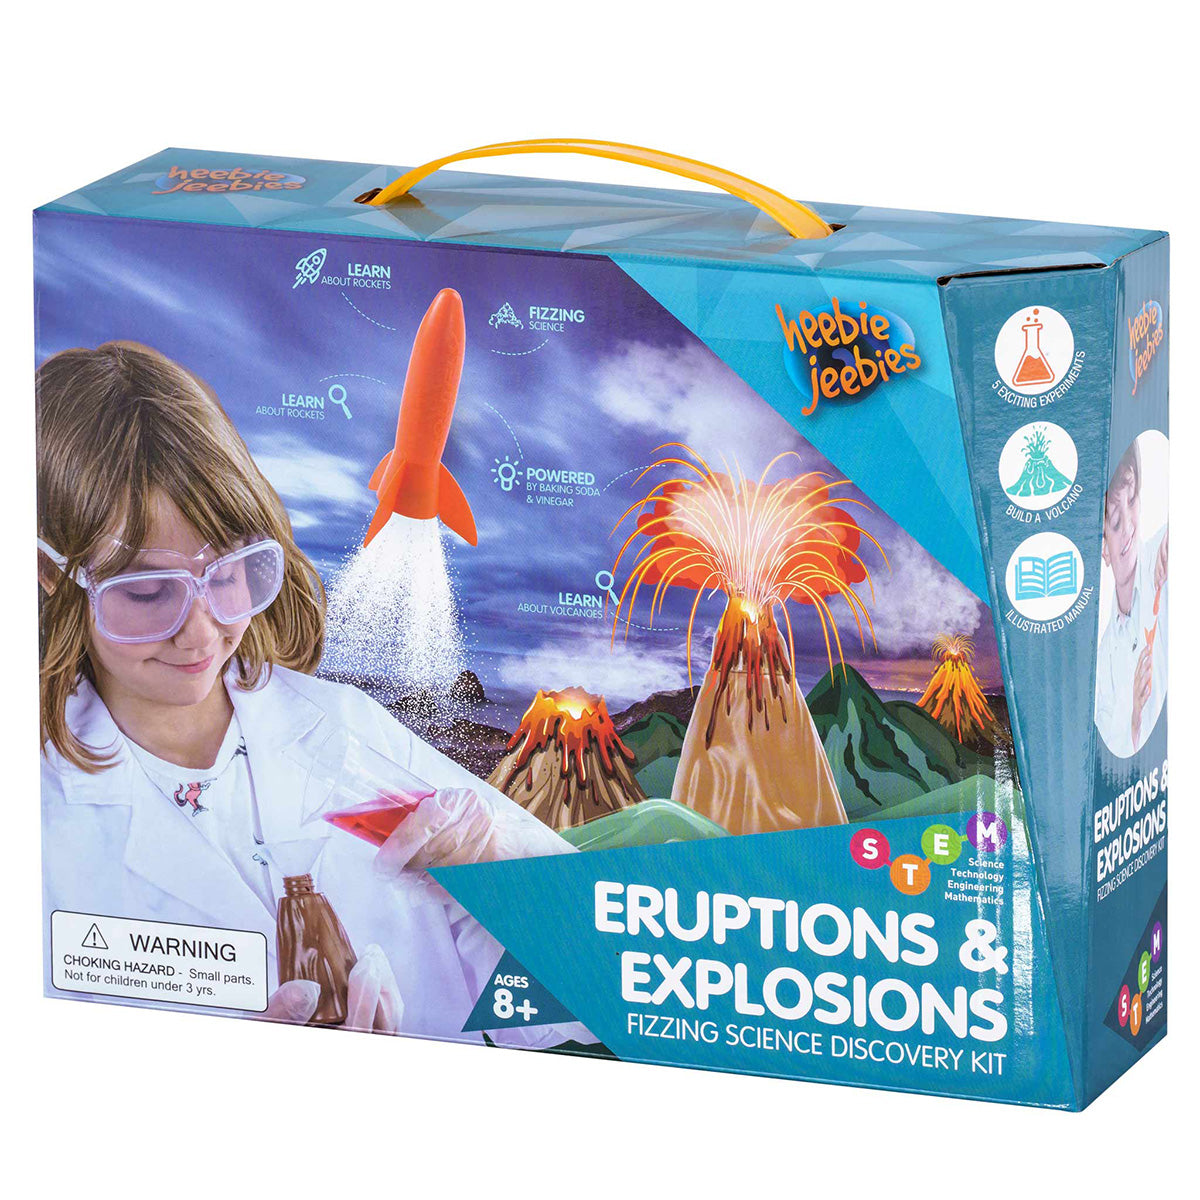 Eruptions & Explosions Science Kit from Heebie Jeebies